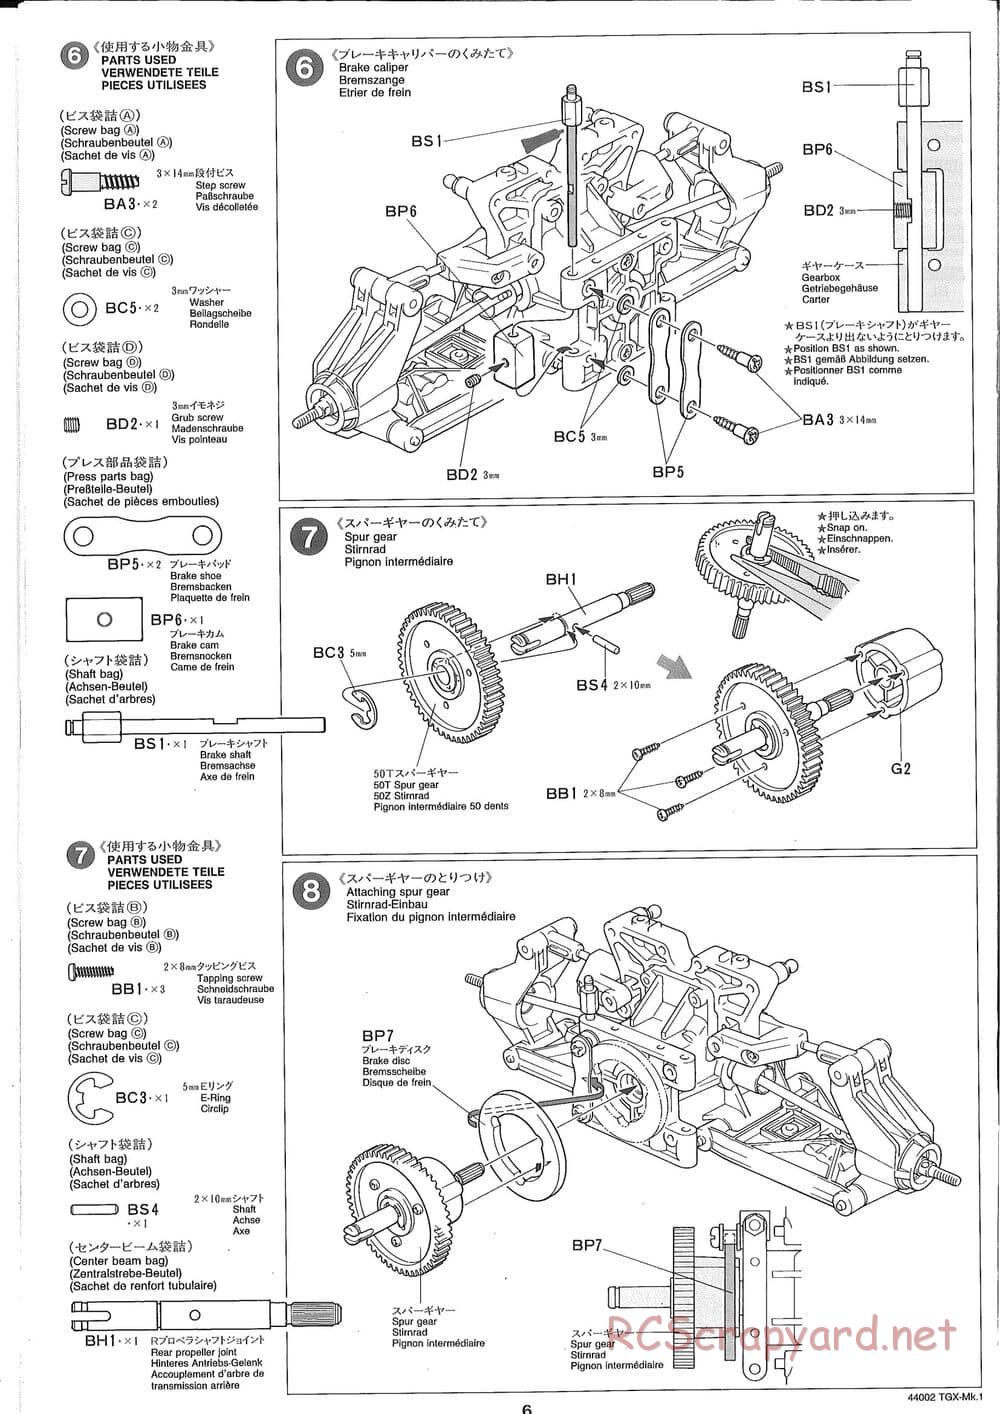 Tamiya - TGX Mk.1 TS Chassis Chassis - Manual - Page 6